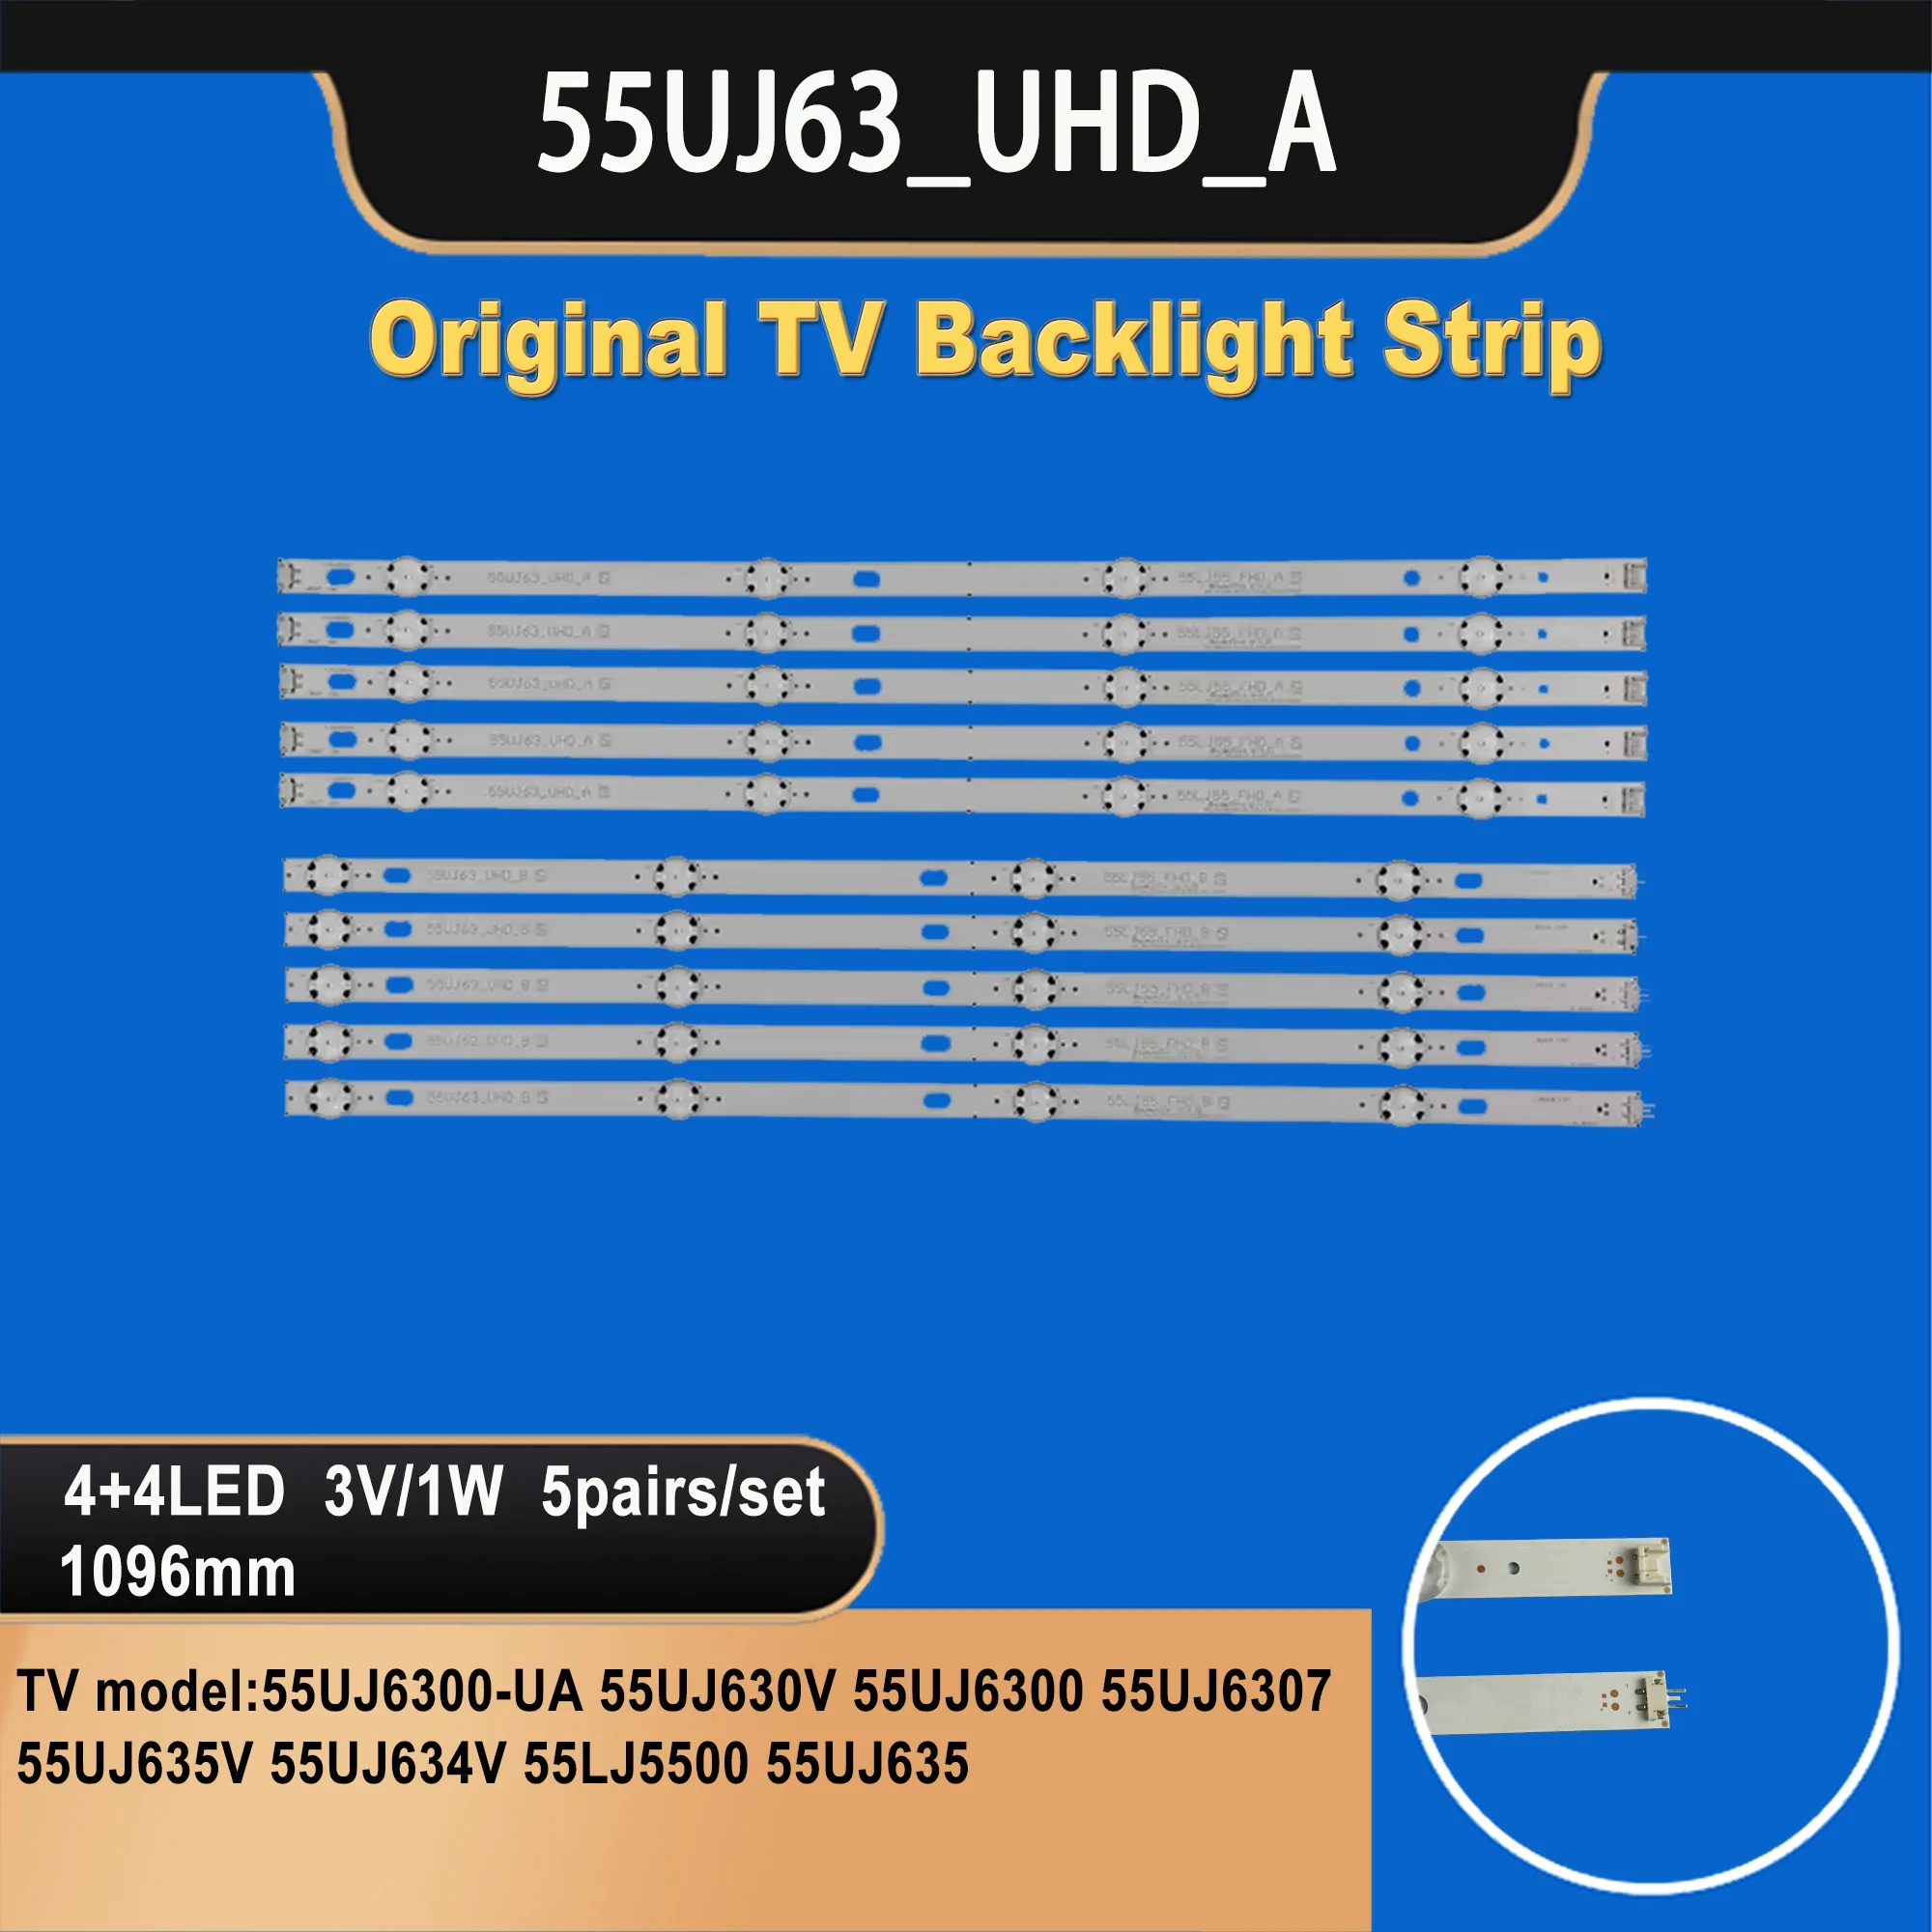 tv-057-led-tv-backlight-strip-for-ssc_55lj55-55uj63_a_8led_rev01-55uj63_uhd_a-55uj6300-ua-55uj630v-55uj6300-55uj6307-55uj635v